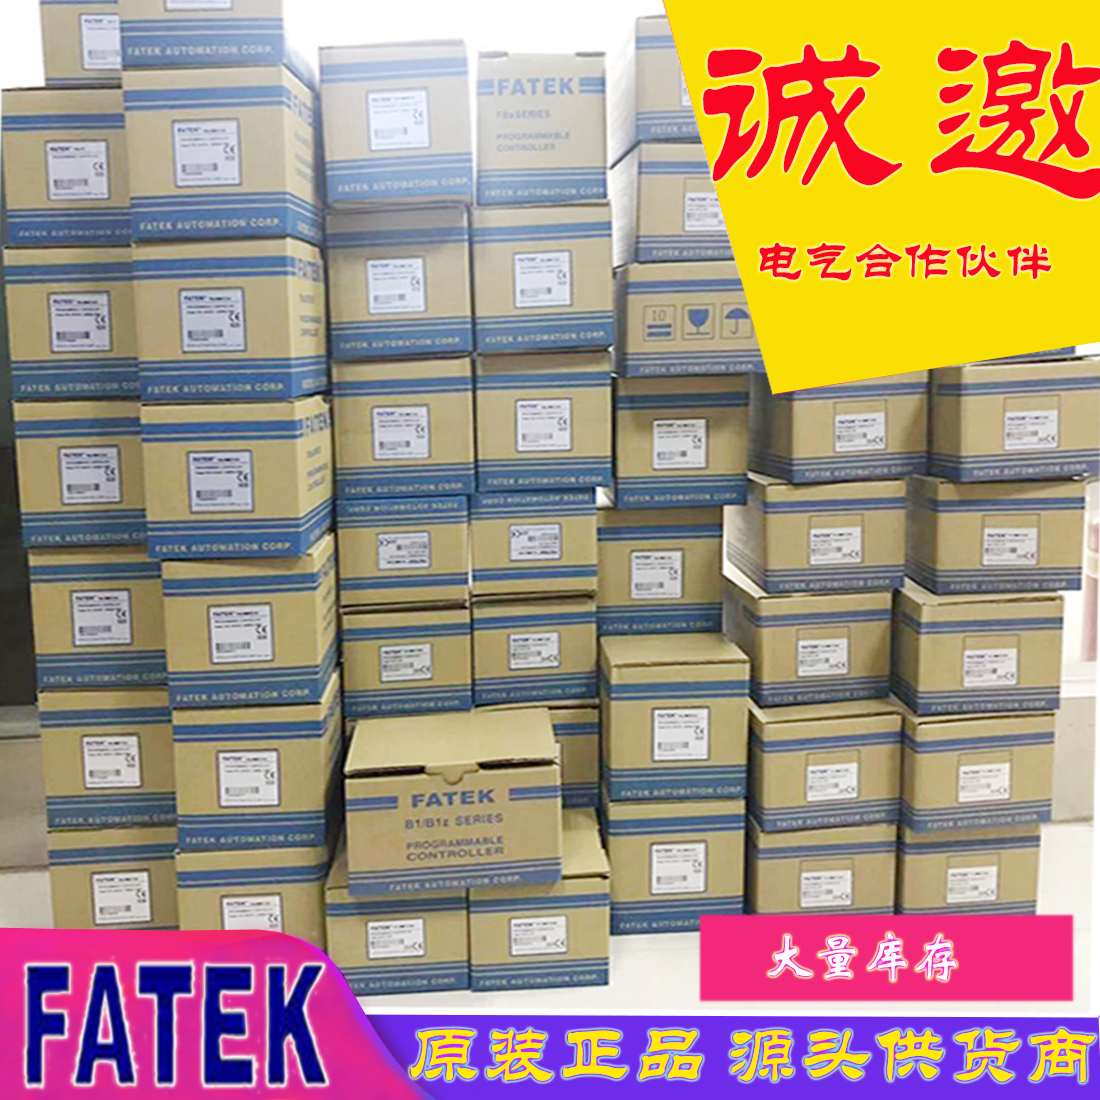 FATEK 中国台湾永宏PLC 原装正品一级代理 FBS-10142024324060MAT2-AC FBS-MAR2-AC